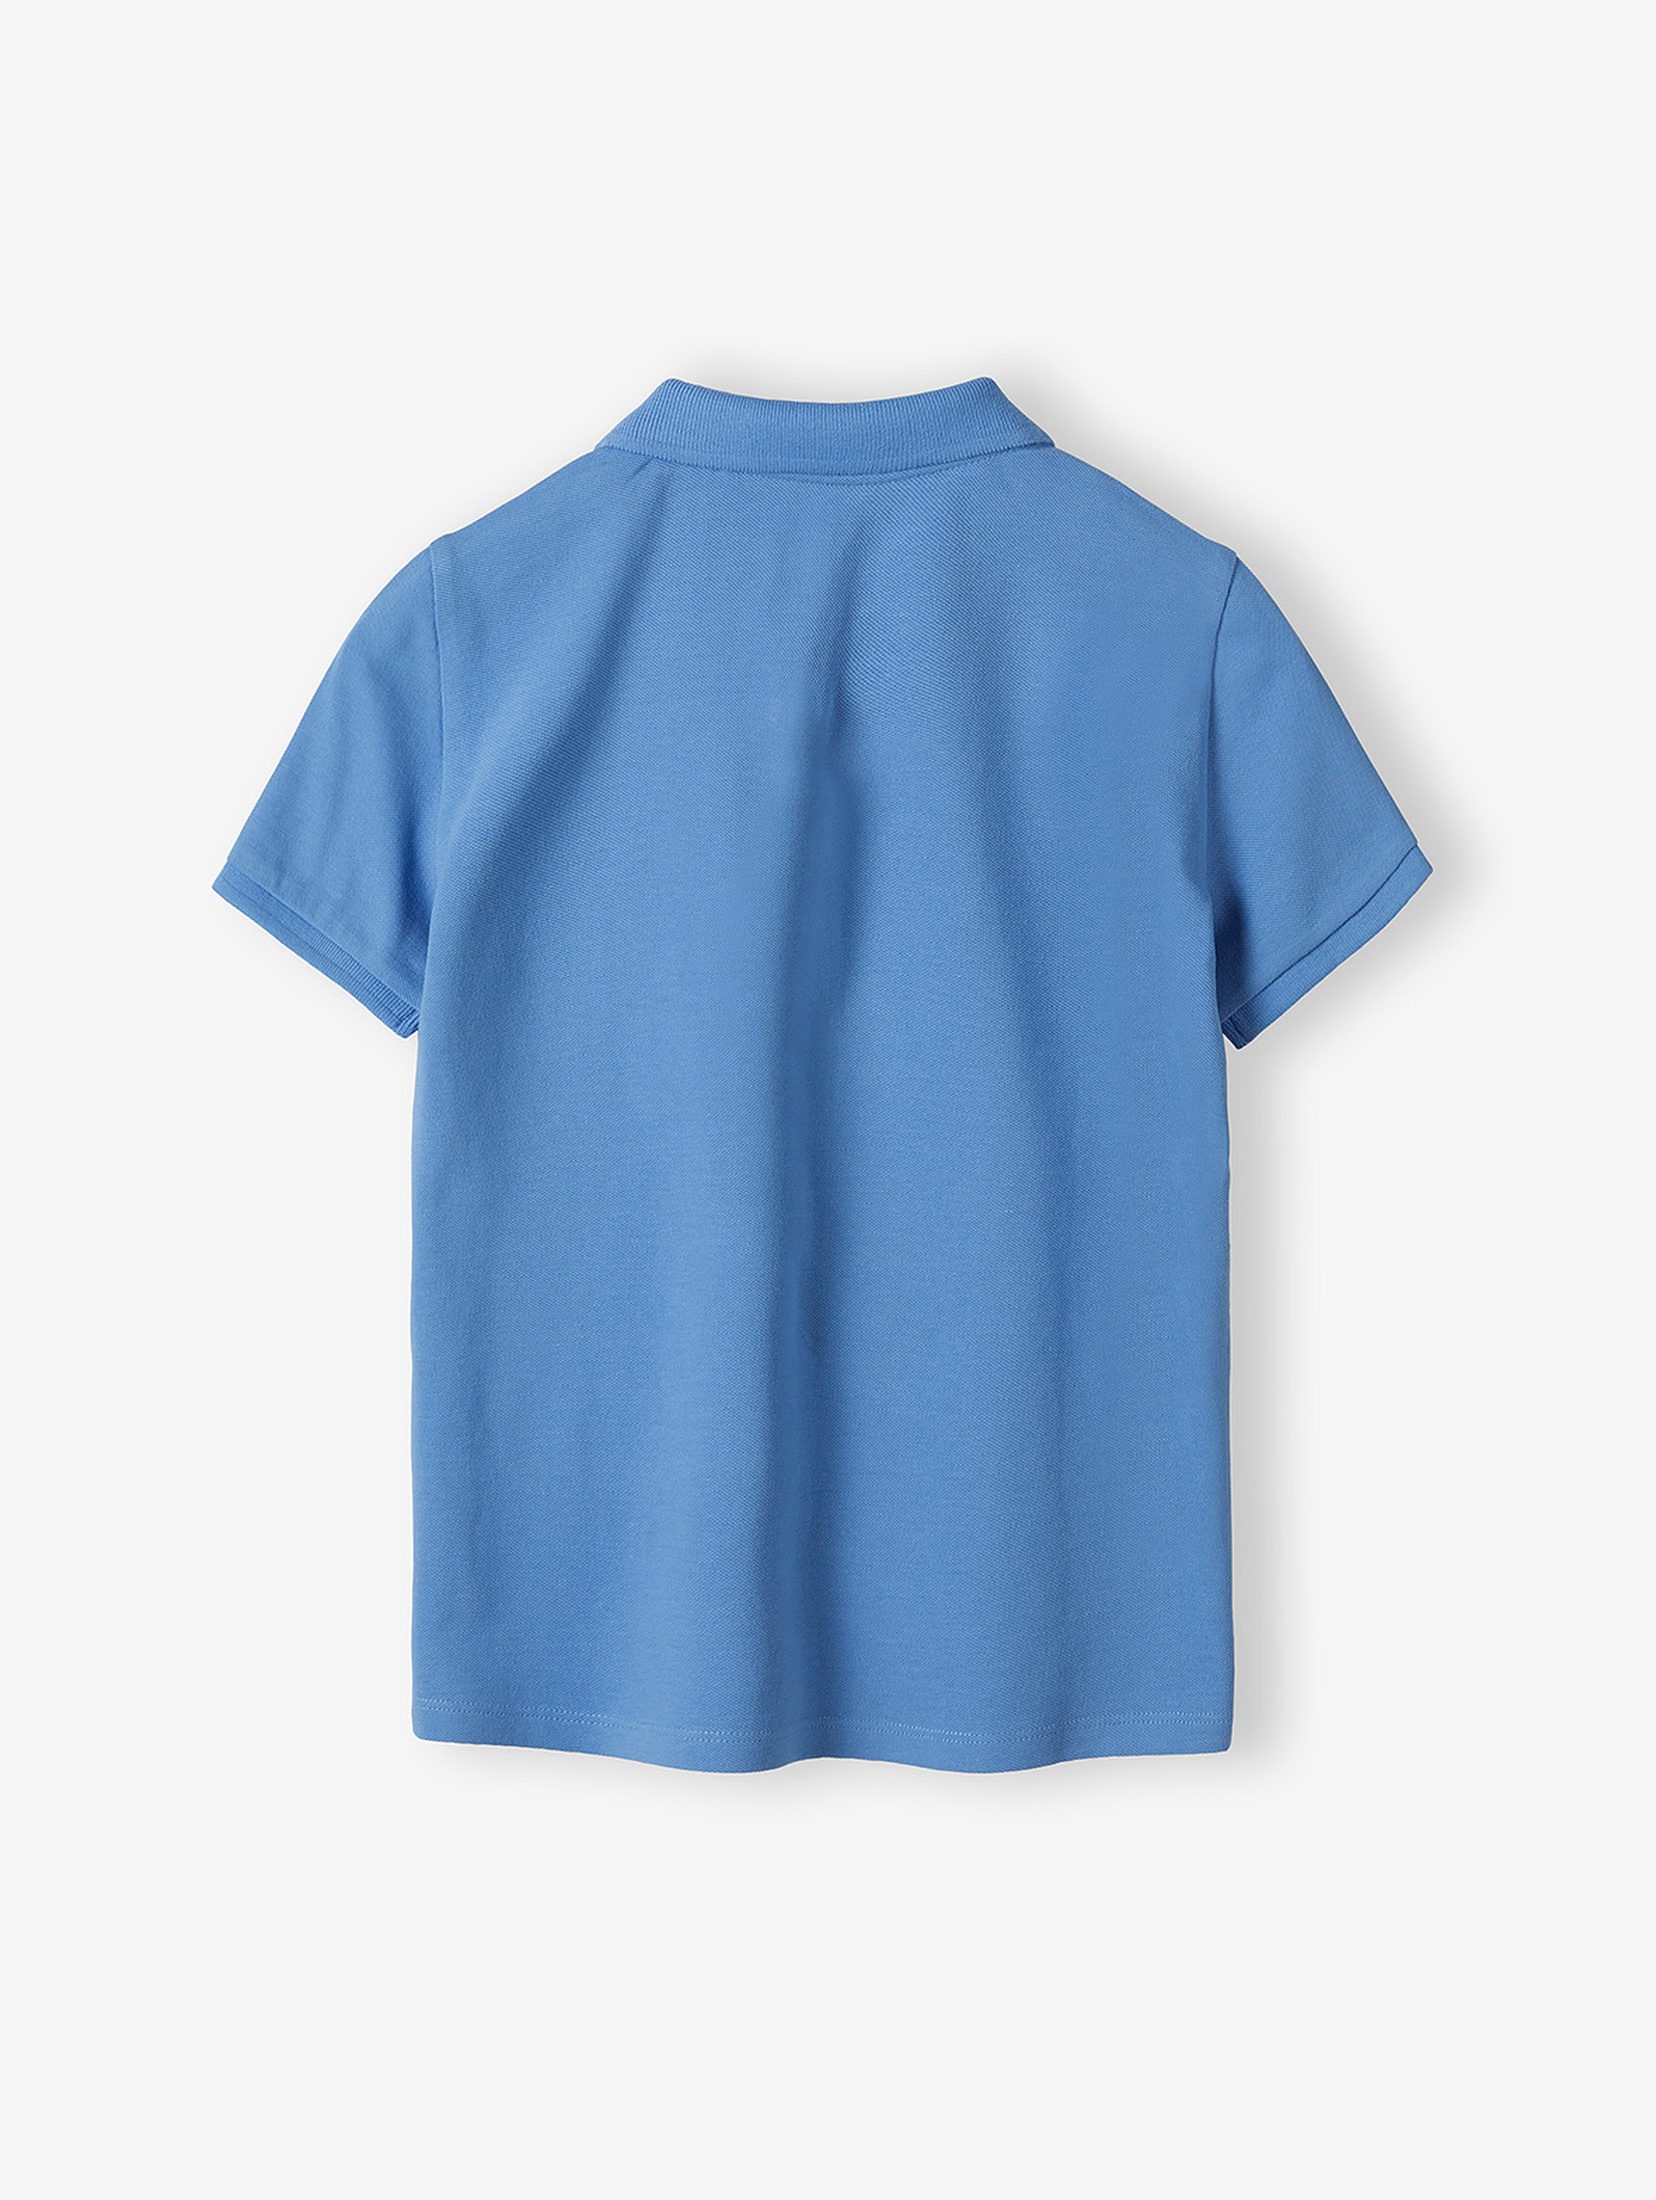 Niebieska bluzka polo pique dla chłopca  - 5.10.15.